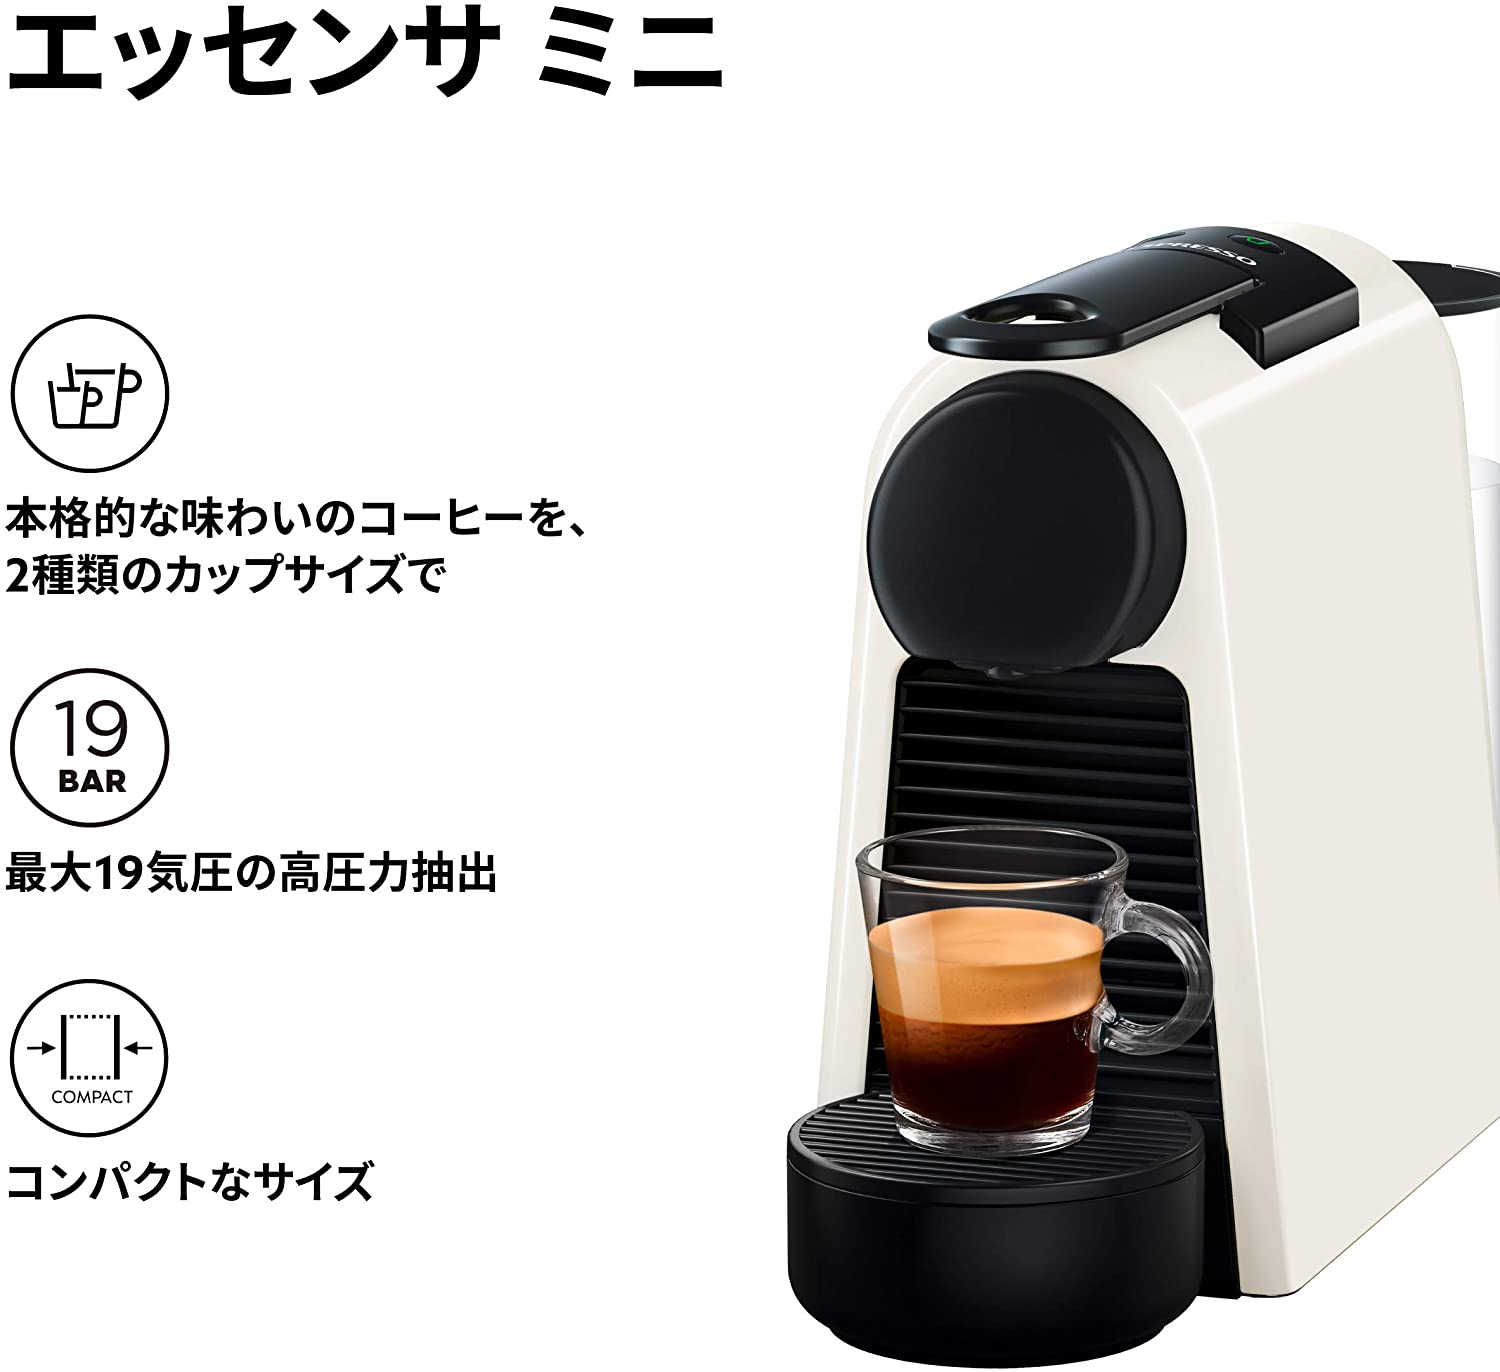 【Nespresso】コーヒーメーカーエッセンサミニW